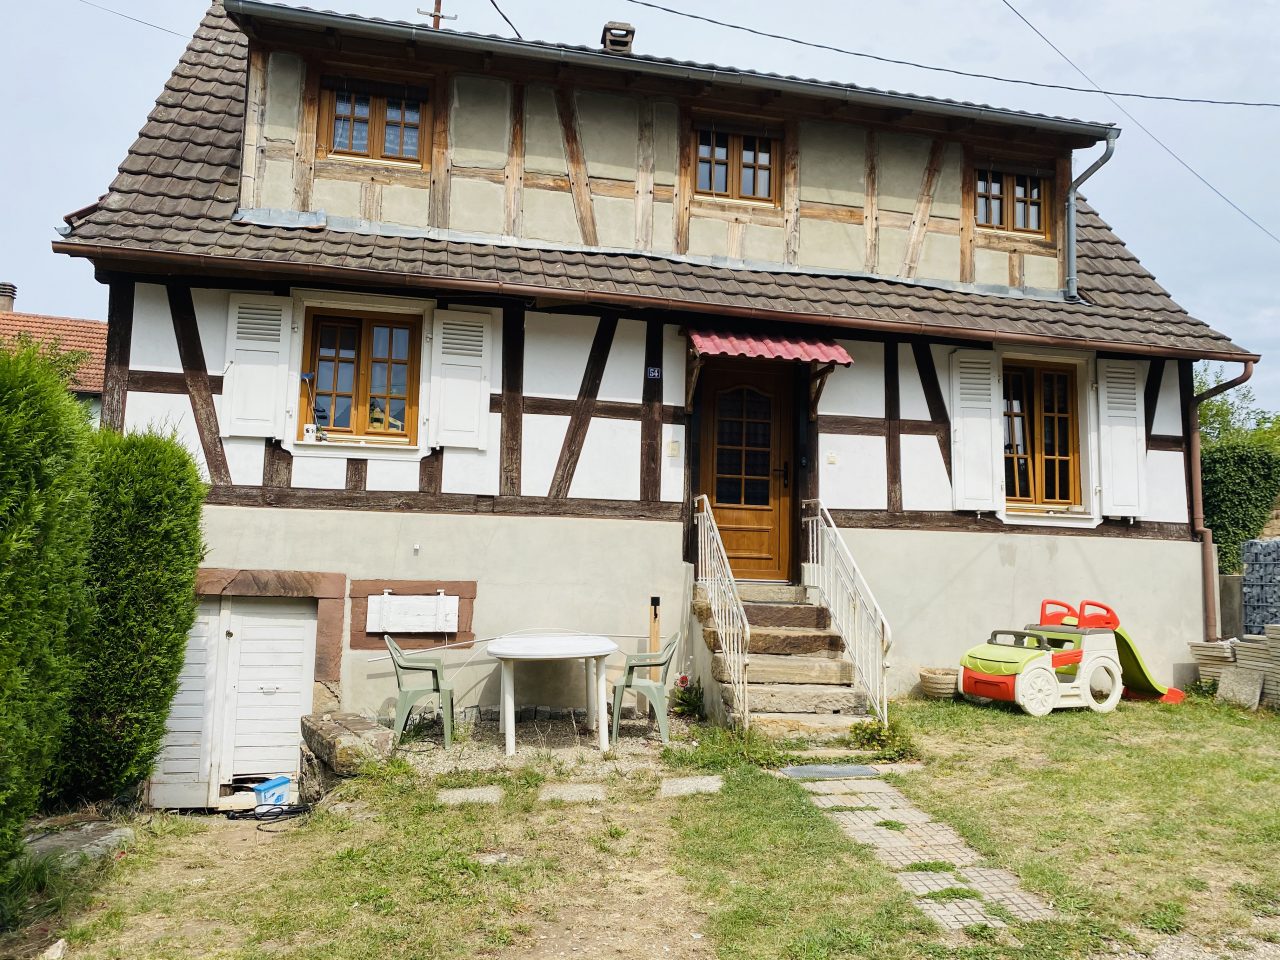 A Goersdorf, charmante maison alsacienne 100m2 sur 1,85 a. Vidéo disponible